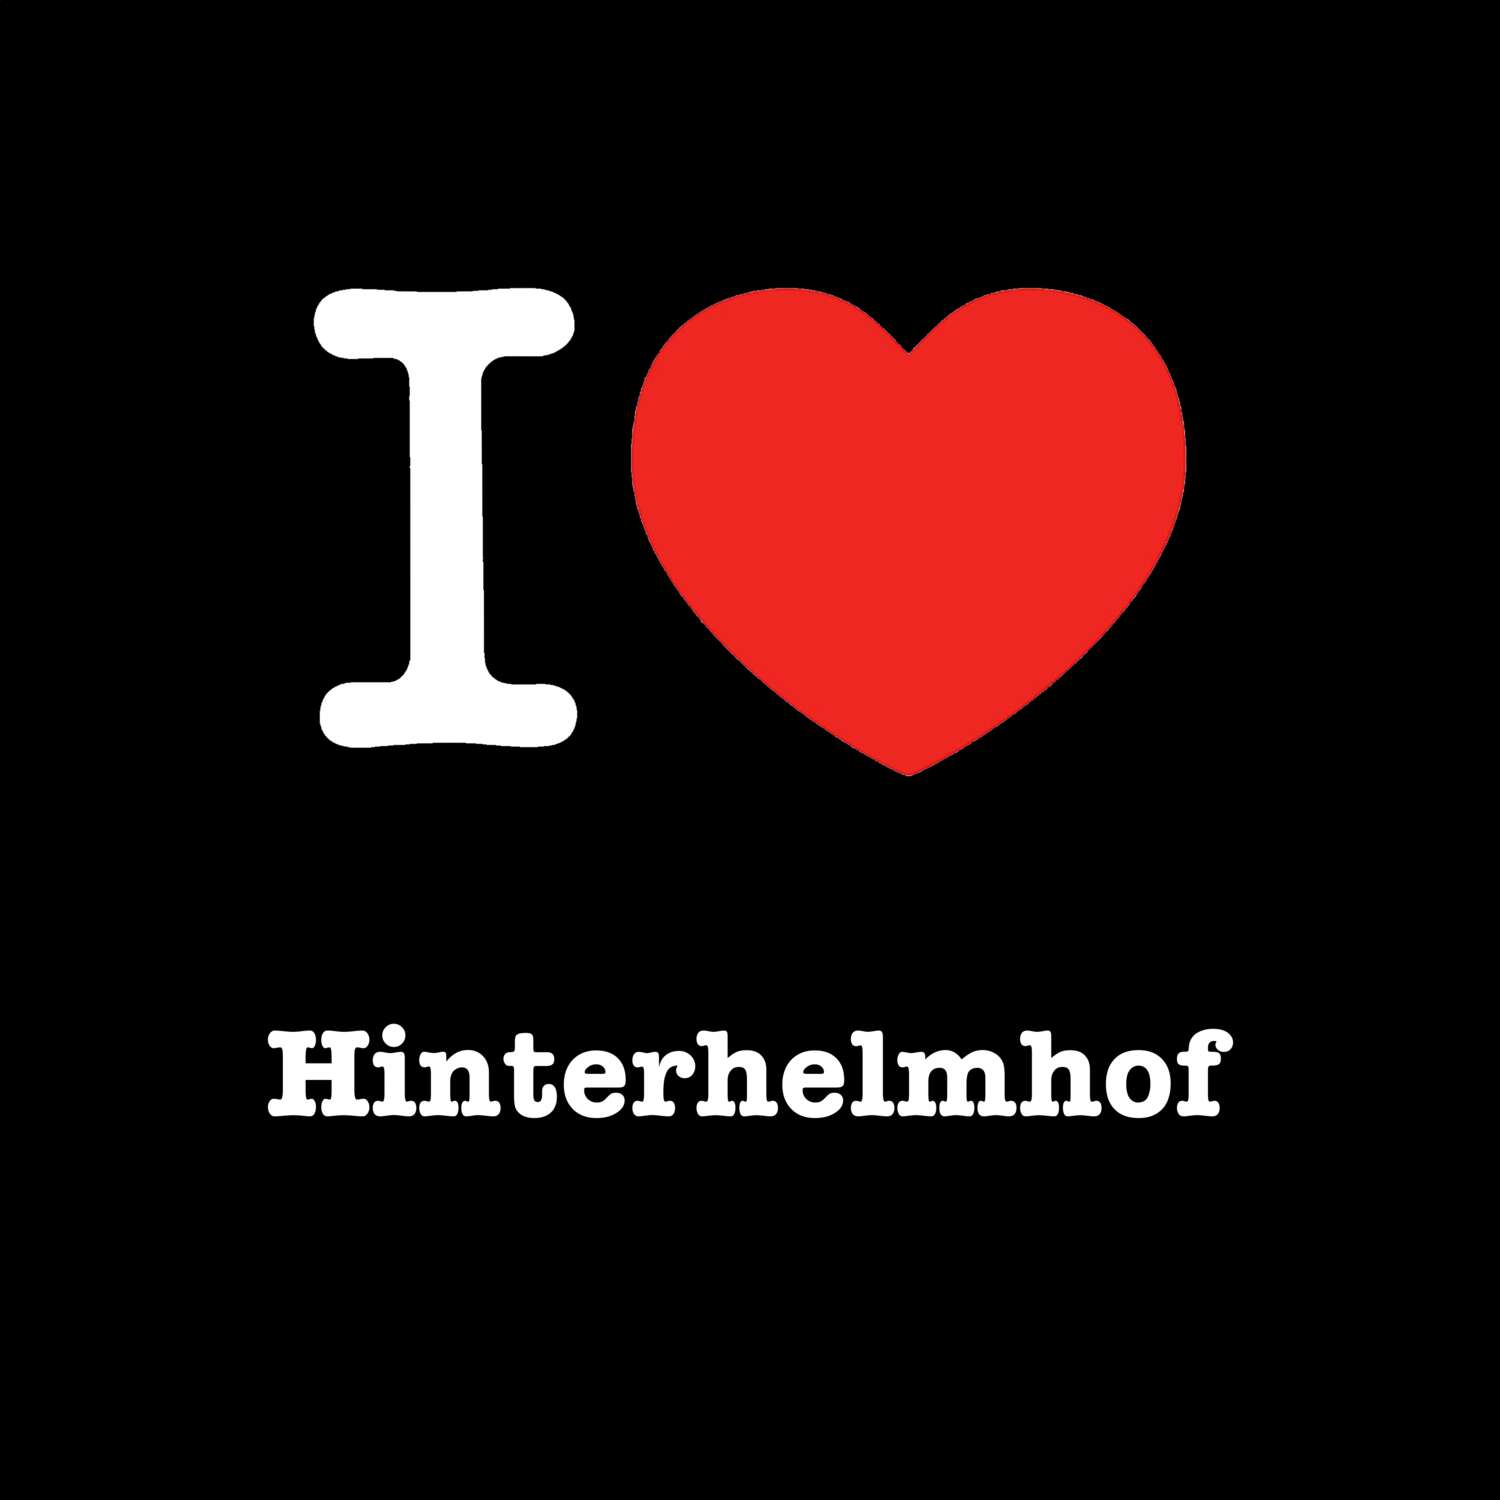 Hinterhelmhof T-Shirt »I love«